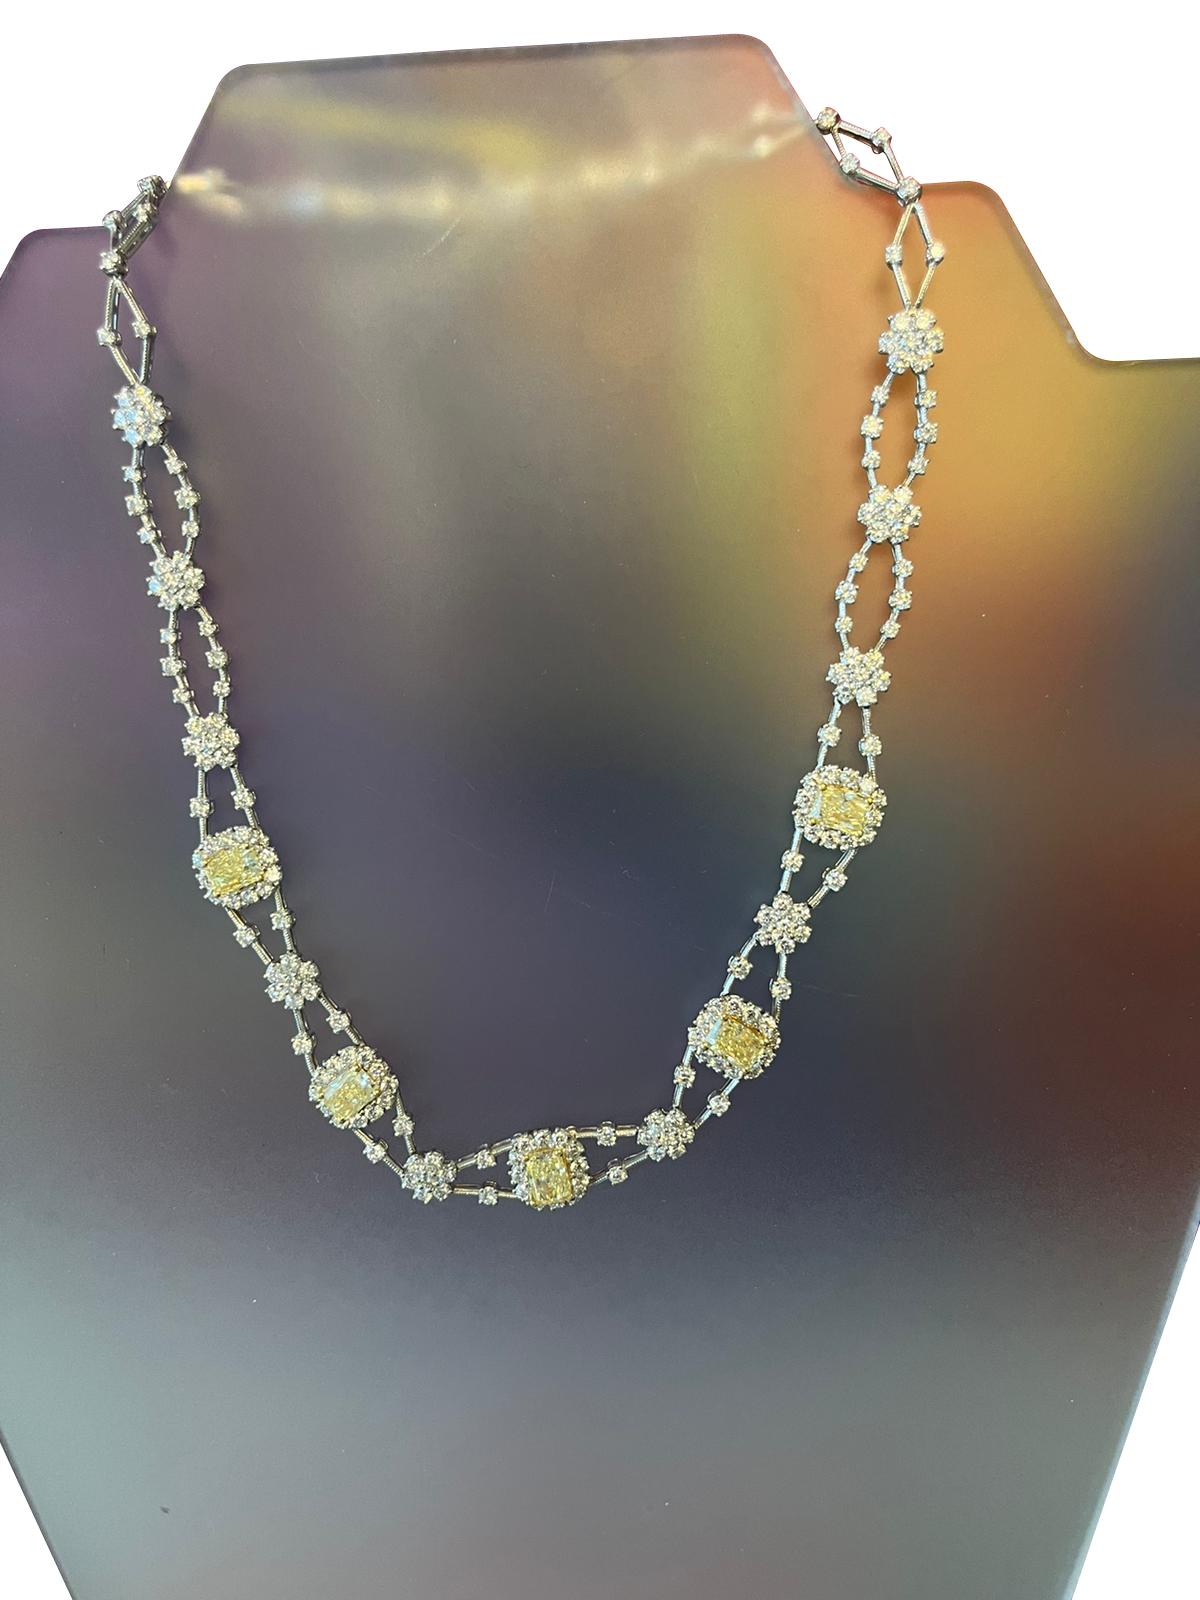 Diese Halskette im natürlichen Radiant-Schliff mit ausgefallenen Diamanten verfügt über 11,8 ct gelbe Radiant-Diamanten. Wunderschönes Collier aus Diamanten. Ein unverzichtbares Schmuckstück. aus 14-karätigem Weißgold. Die Halskette ist außerdem mit